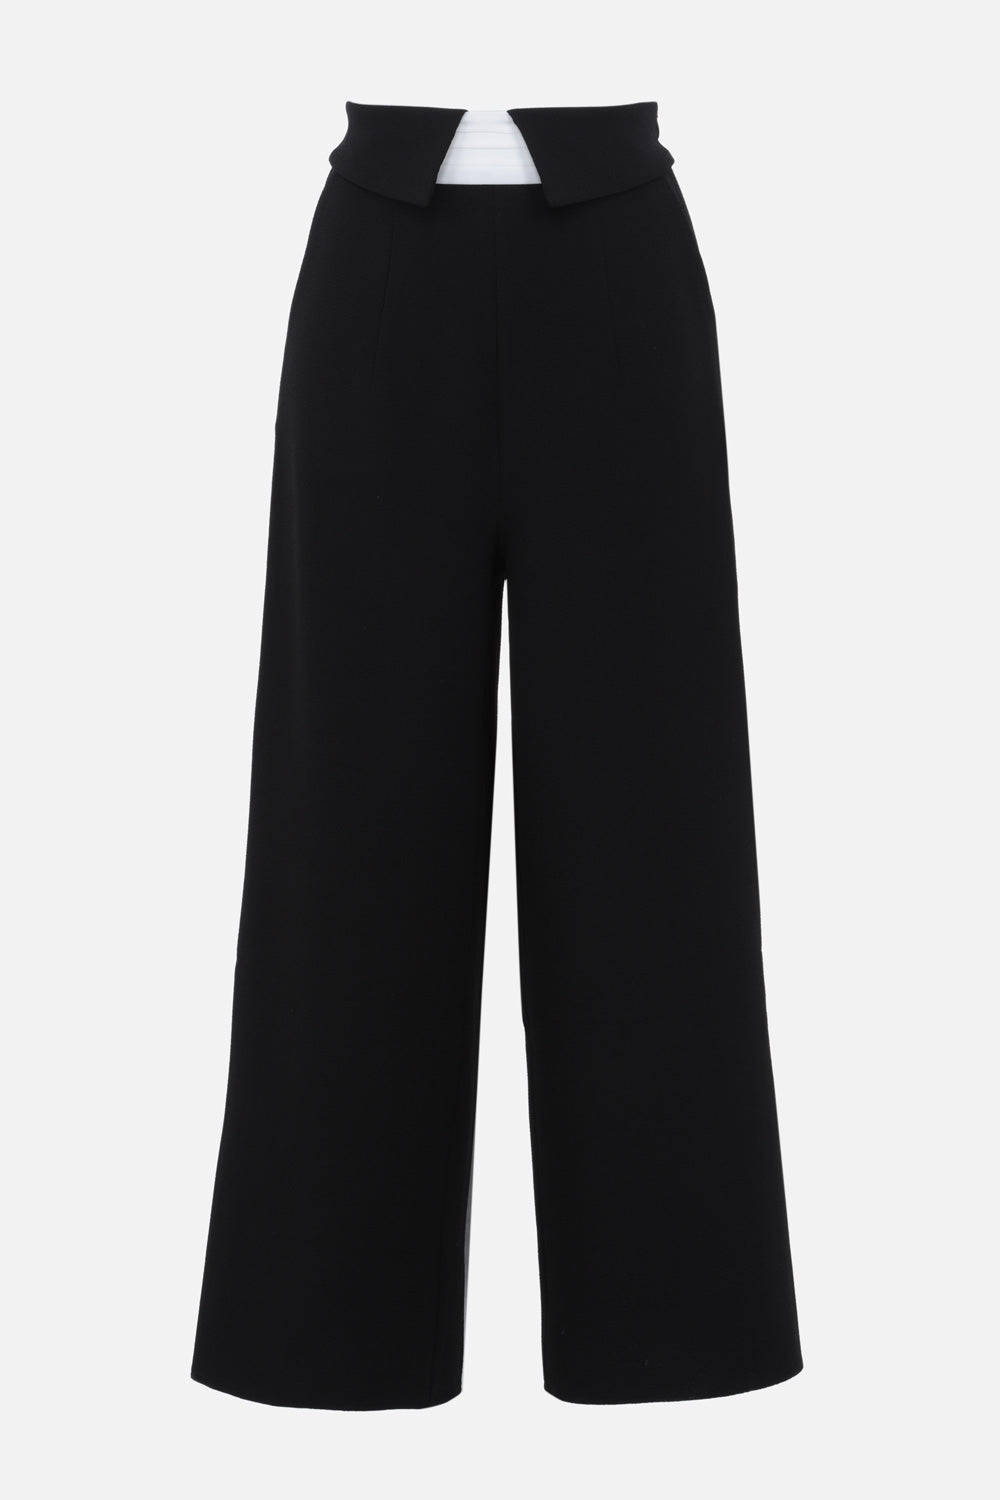 050905-530-Pantalon-tailleur-noir-taille-haute-Noir